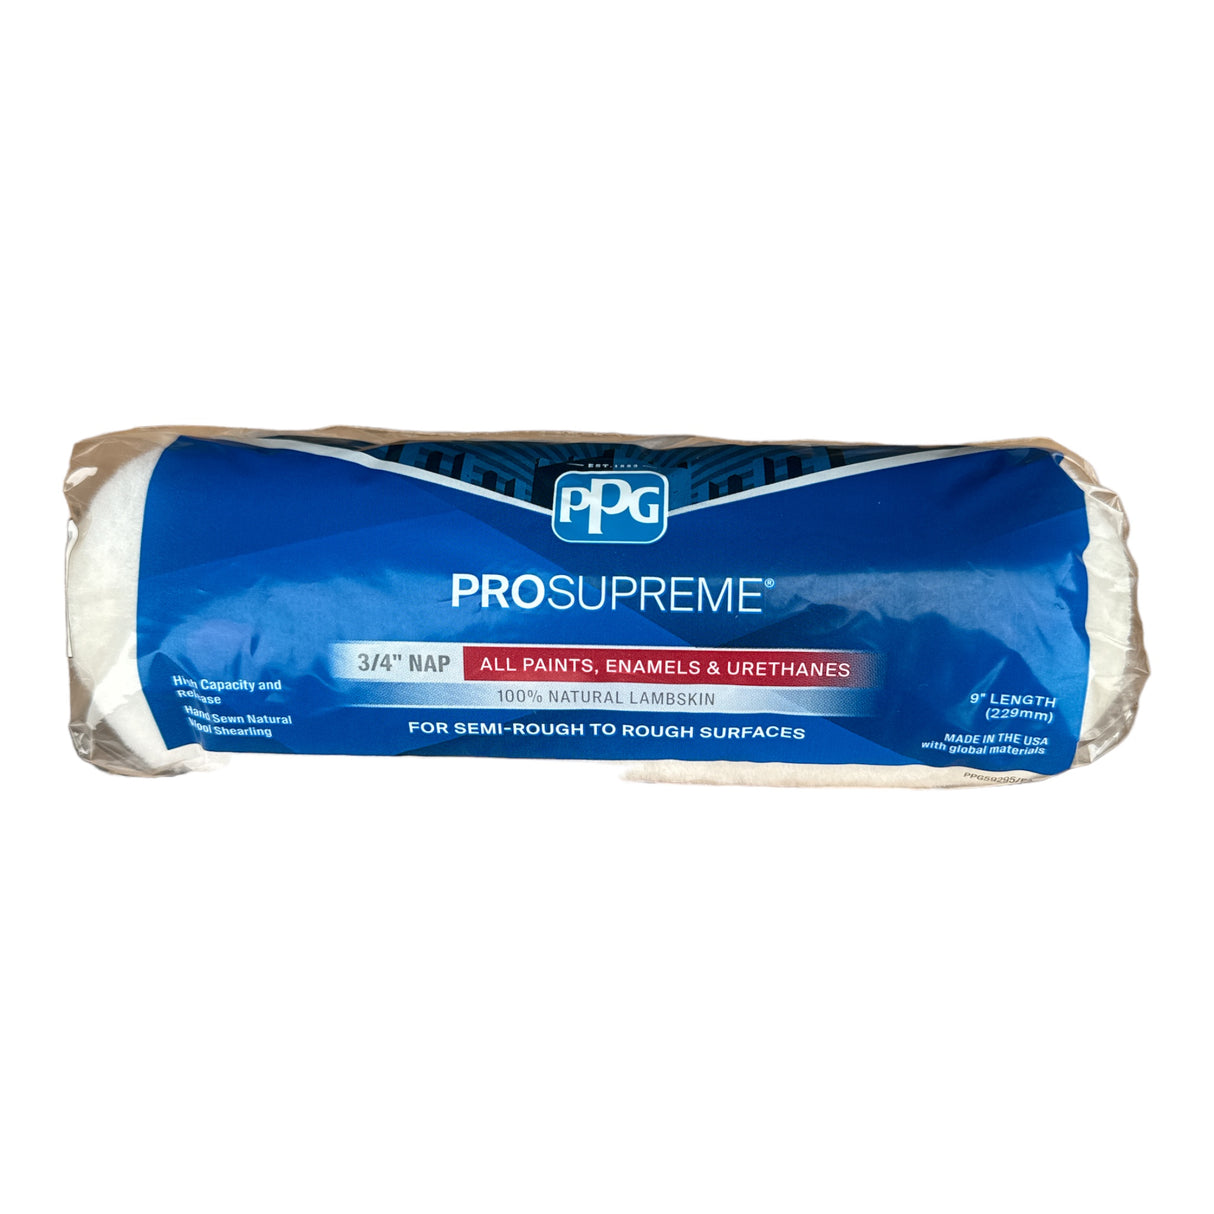 PPG® ProSupreme® Lammfell 3/4" Nickerchen 9" Länge (100 % natürliches Lammfell) 